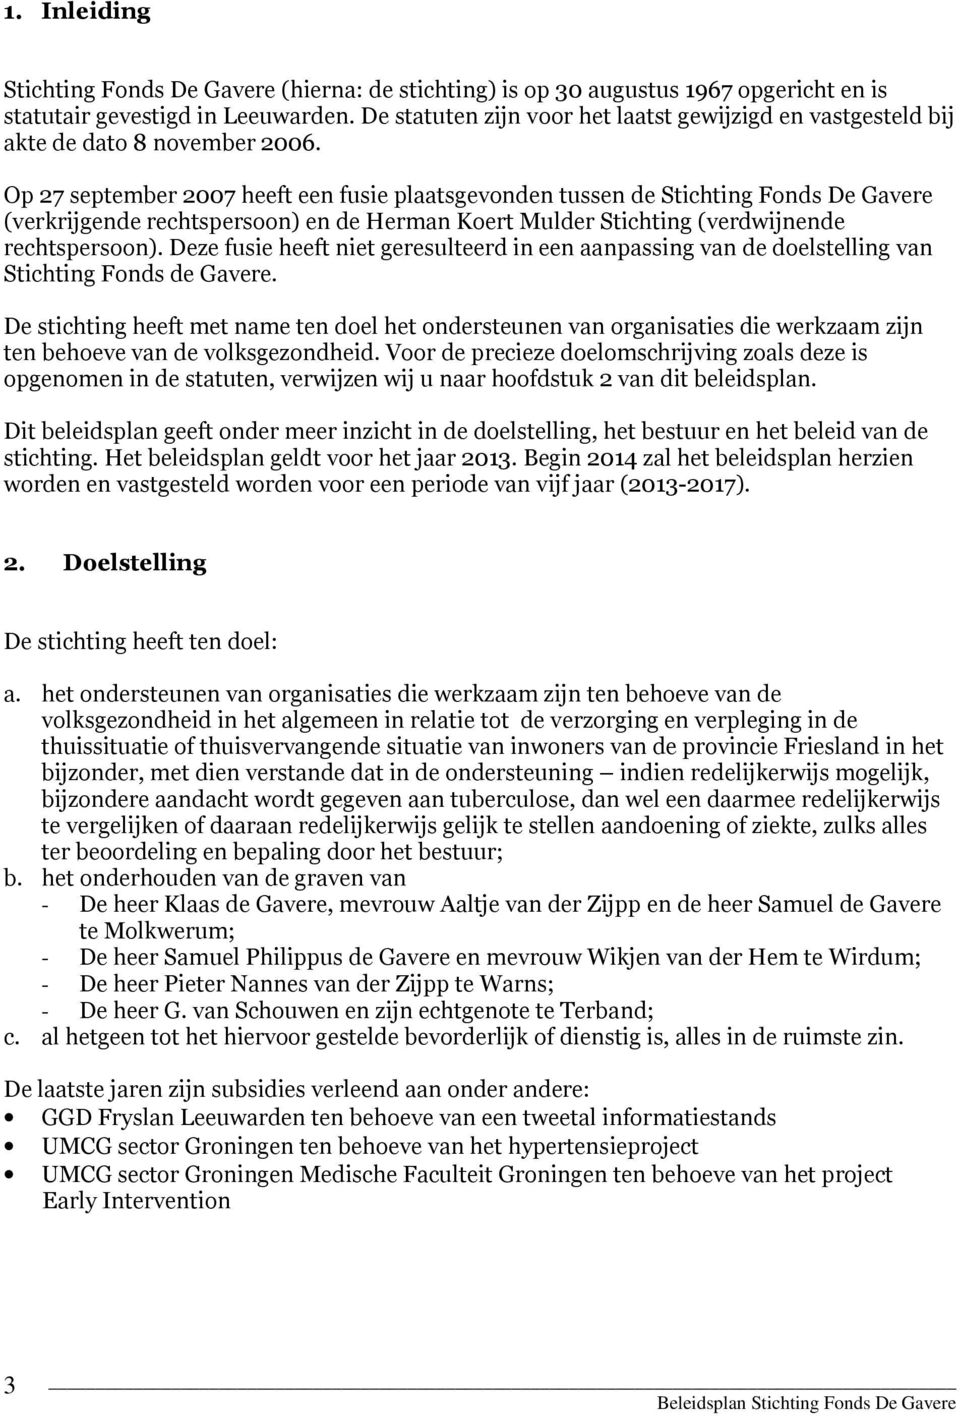 Op 27 september 2007 heeft een fusie plaatsgevonden tussen de Stichting Fonds De Gavere (verkrijgende rechtspersoon) en de Herman Koert Mulder Stichting (verdwijnende rechtspersoon).